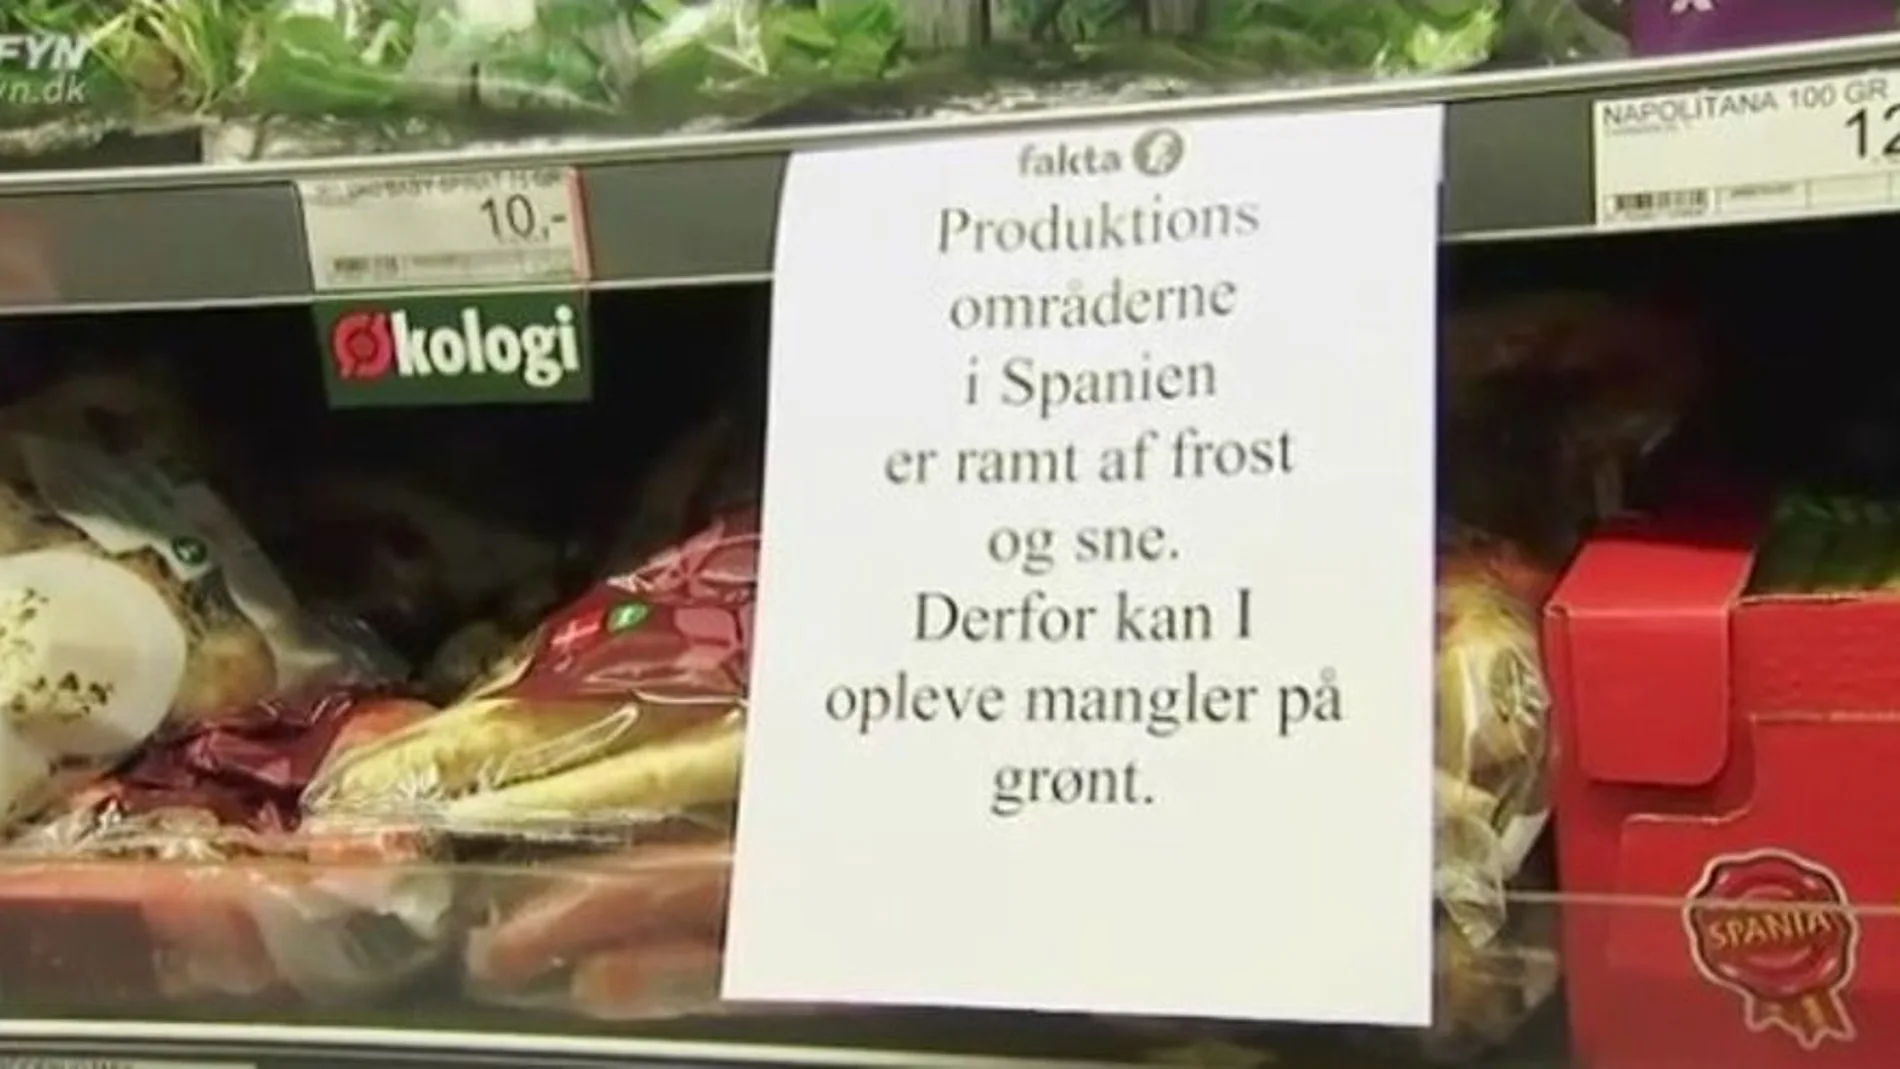 Cartel en un supermercado de la cadena Fakta, en la isla de Fiona, al sur de Dinamarca